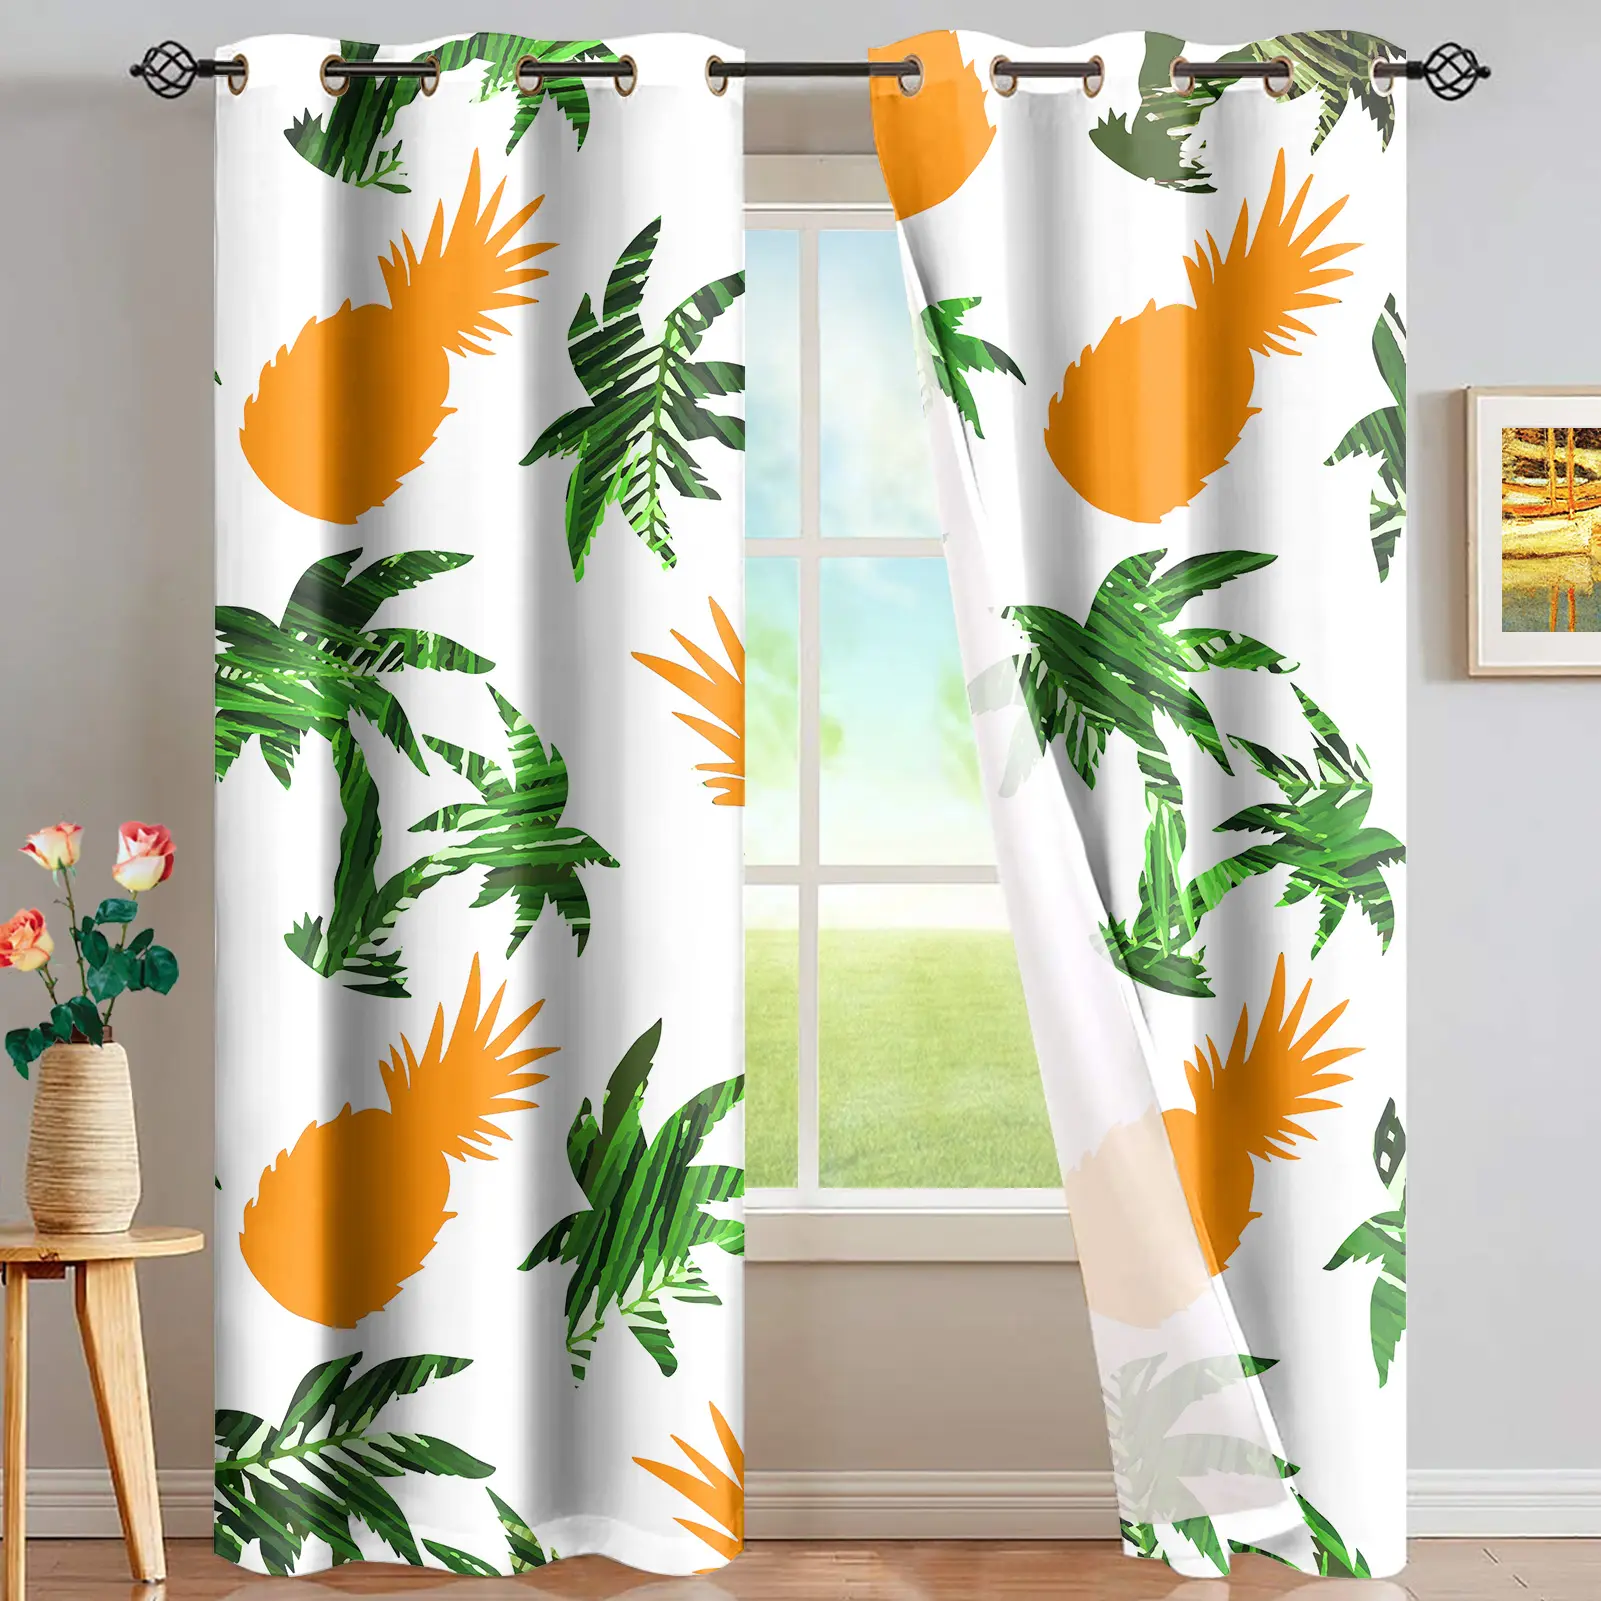 2021 Hot Selling Großhandel Hawaiian Style Ananas Kokosnuss Druck Vorhänge für das Wohnzimmer Vorhang Polyester Stoff